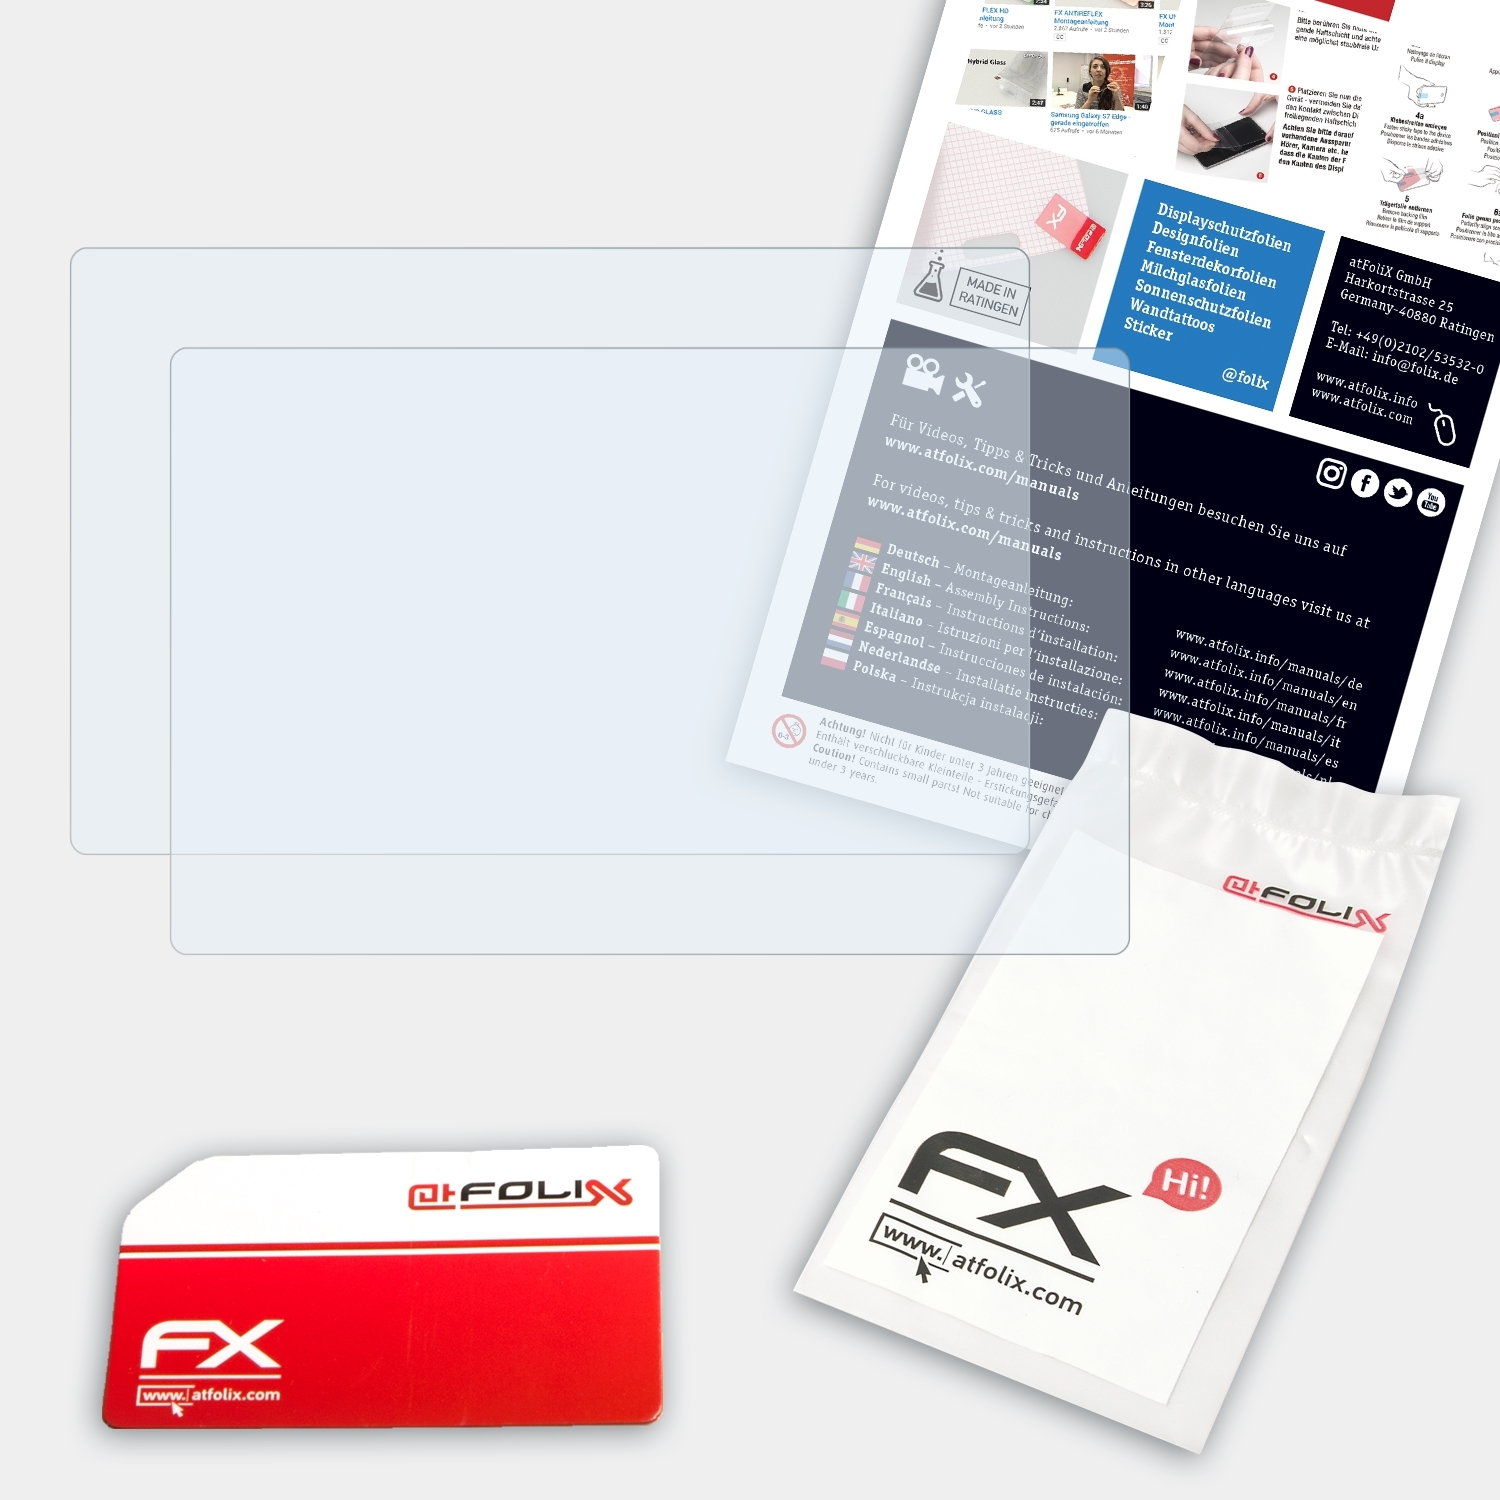 ATFOLIX 2x FX-Clear Displayschutz(für XP-PEN Artist 10S)